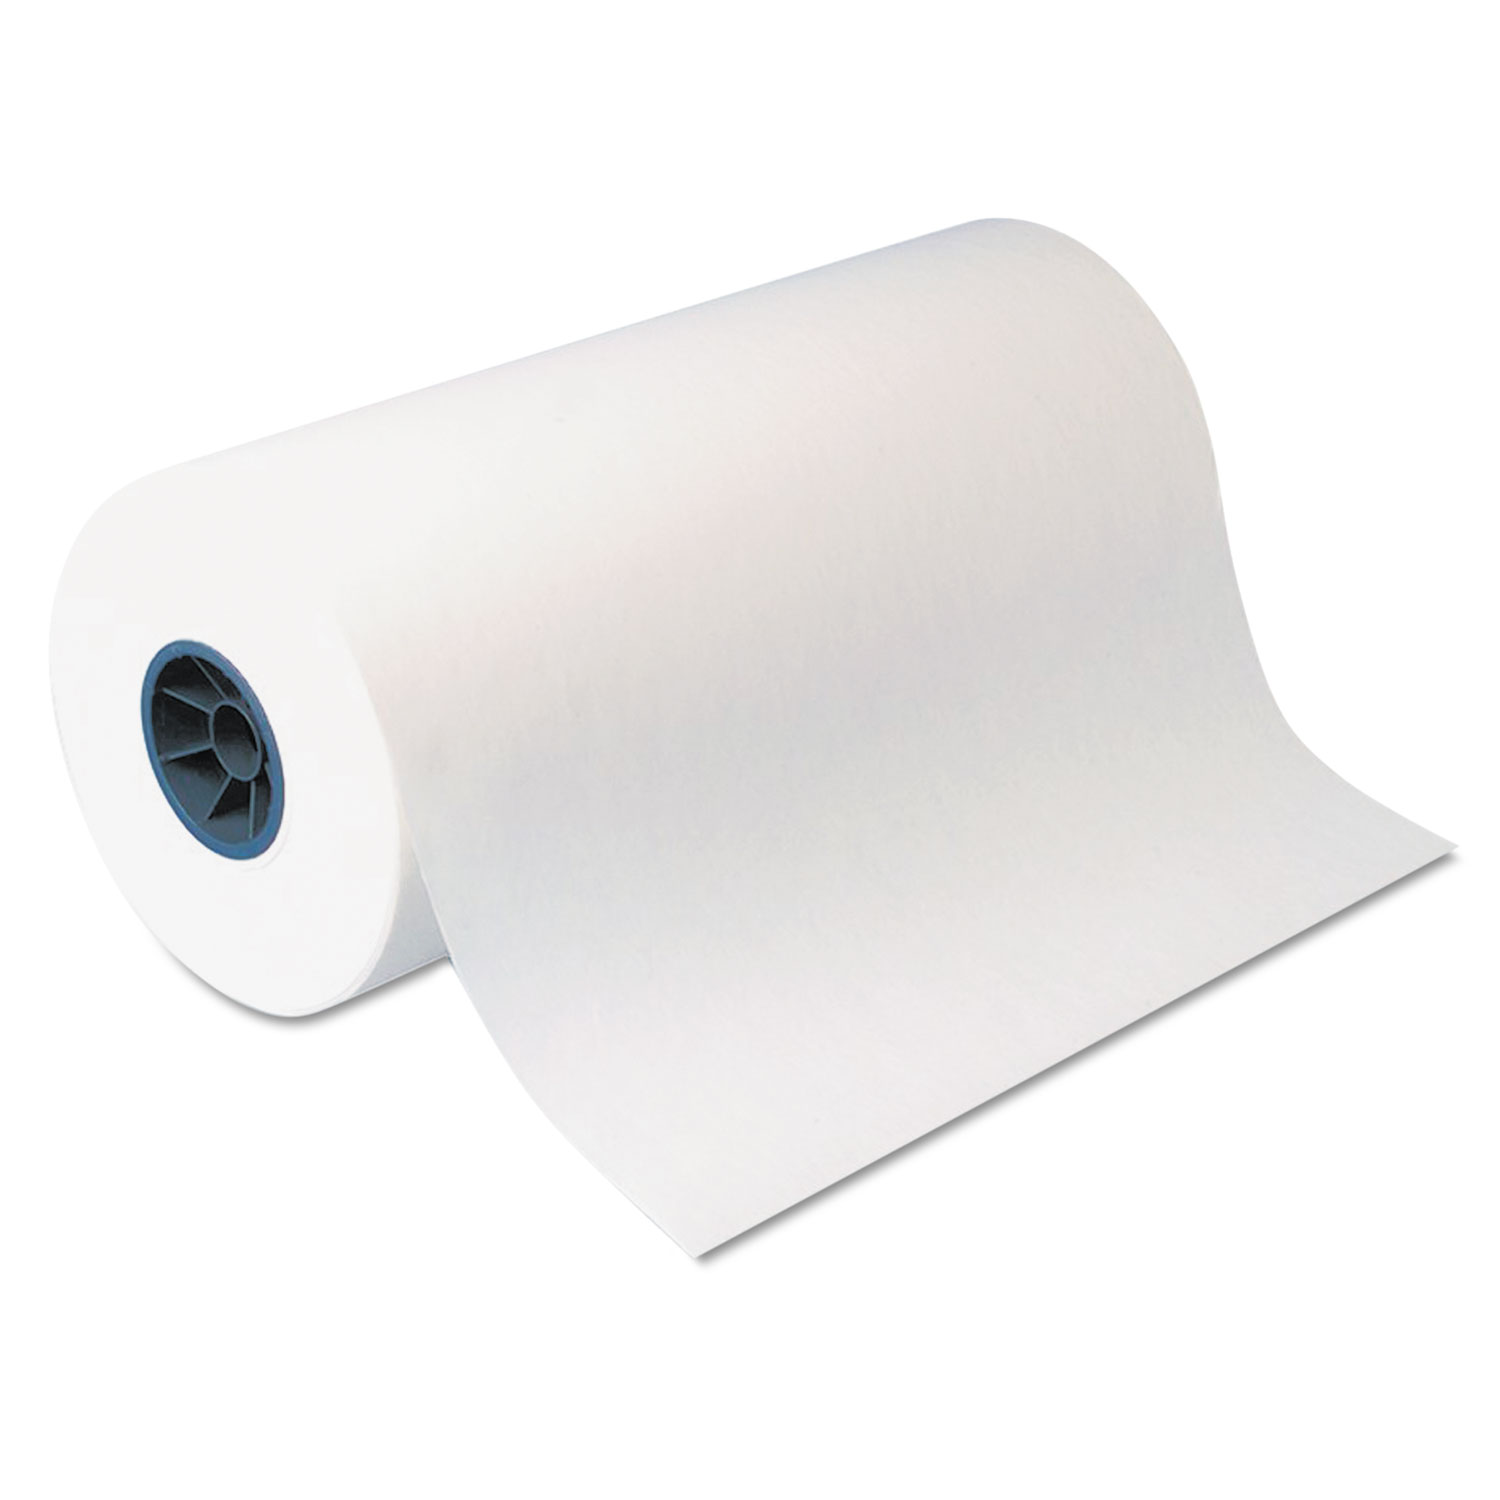  Dixie KL24 Kold-Lok Polyethylene-Coated Freezer Paper Roll, 24 x 1100 ft, White (DXEKL24) 